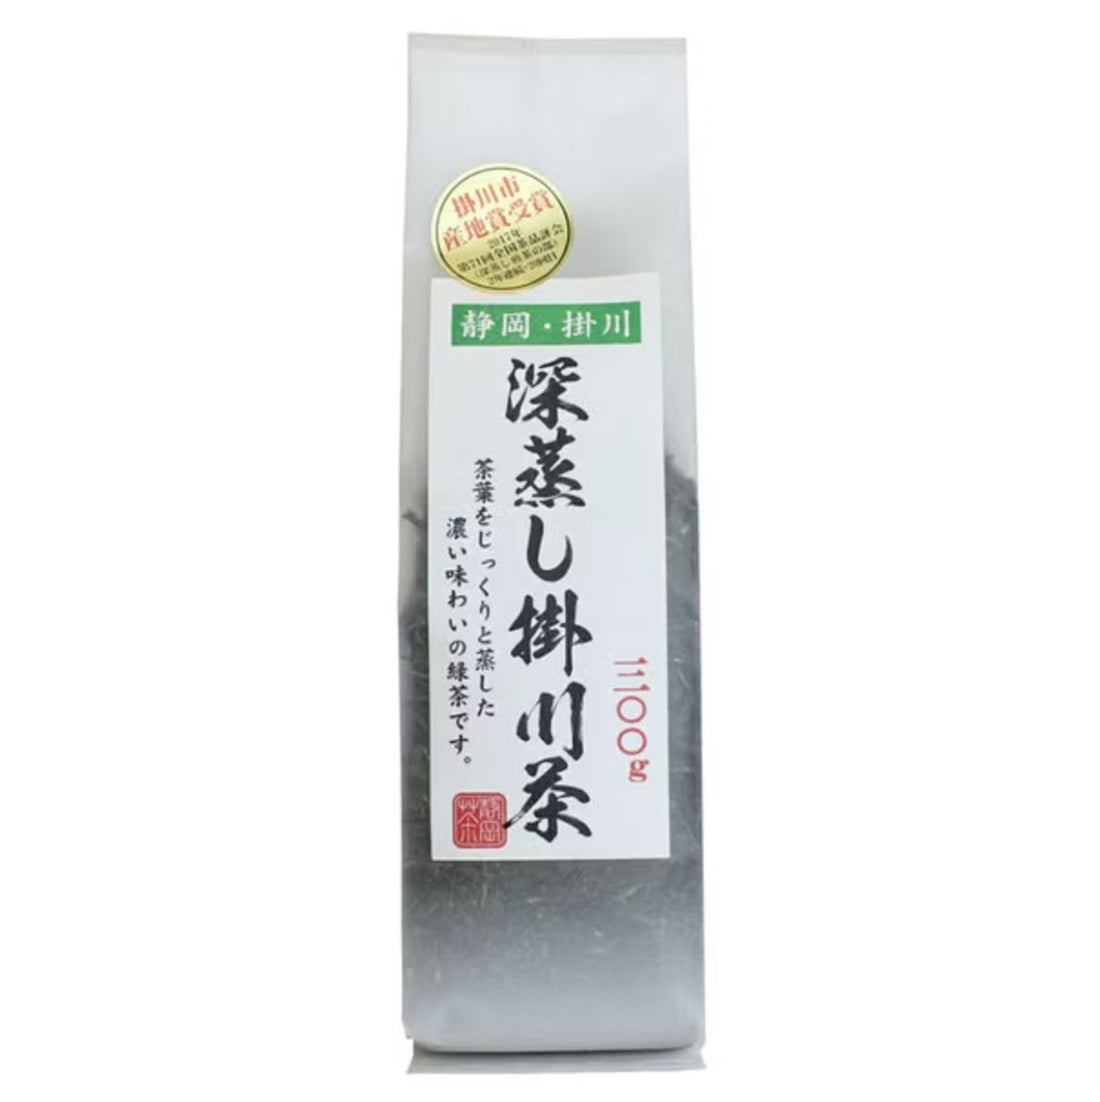 Juroen Deep Steamed Kakegawa Tea 300g - NihonMura